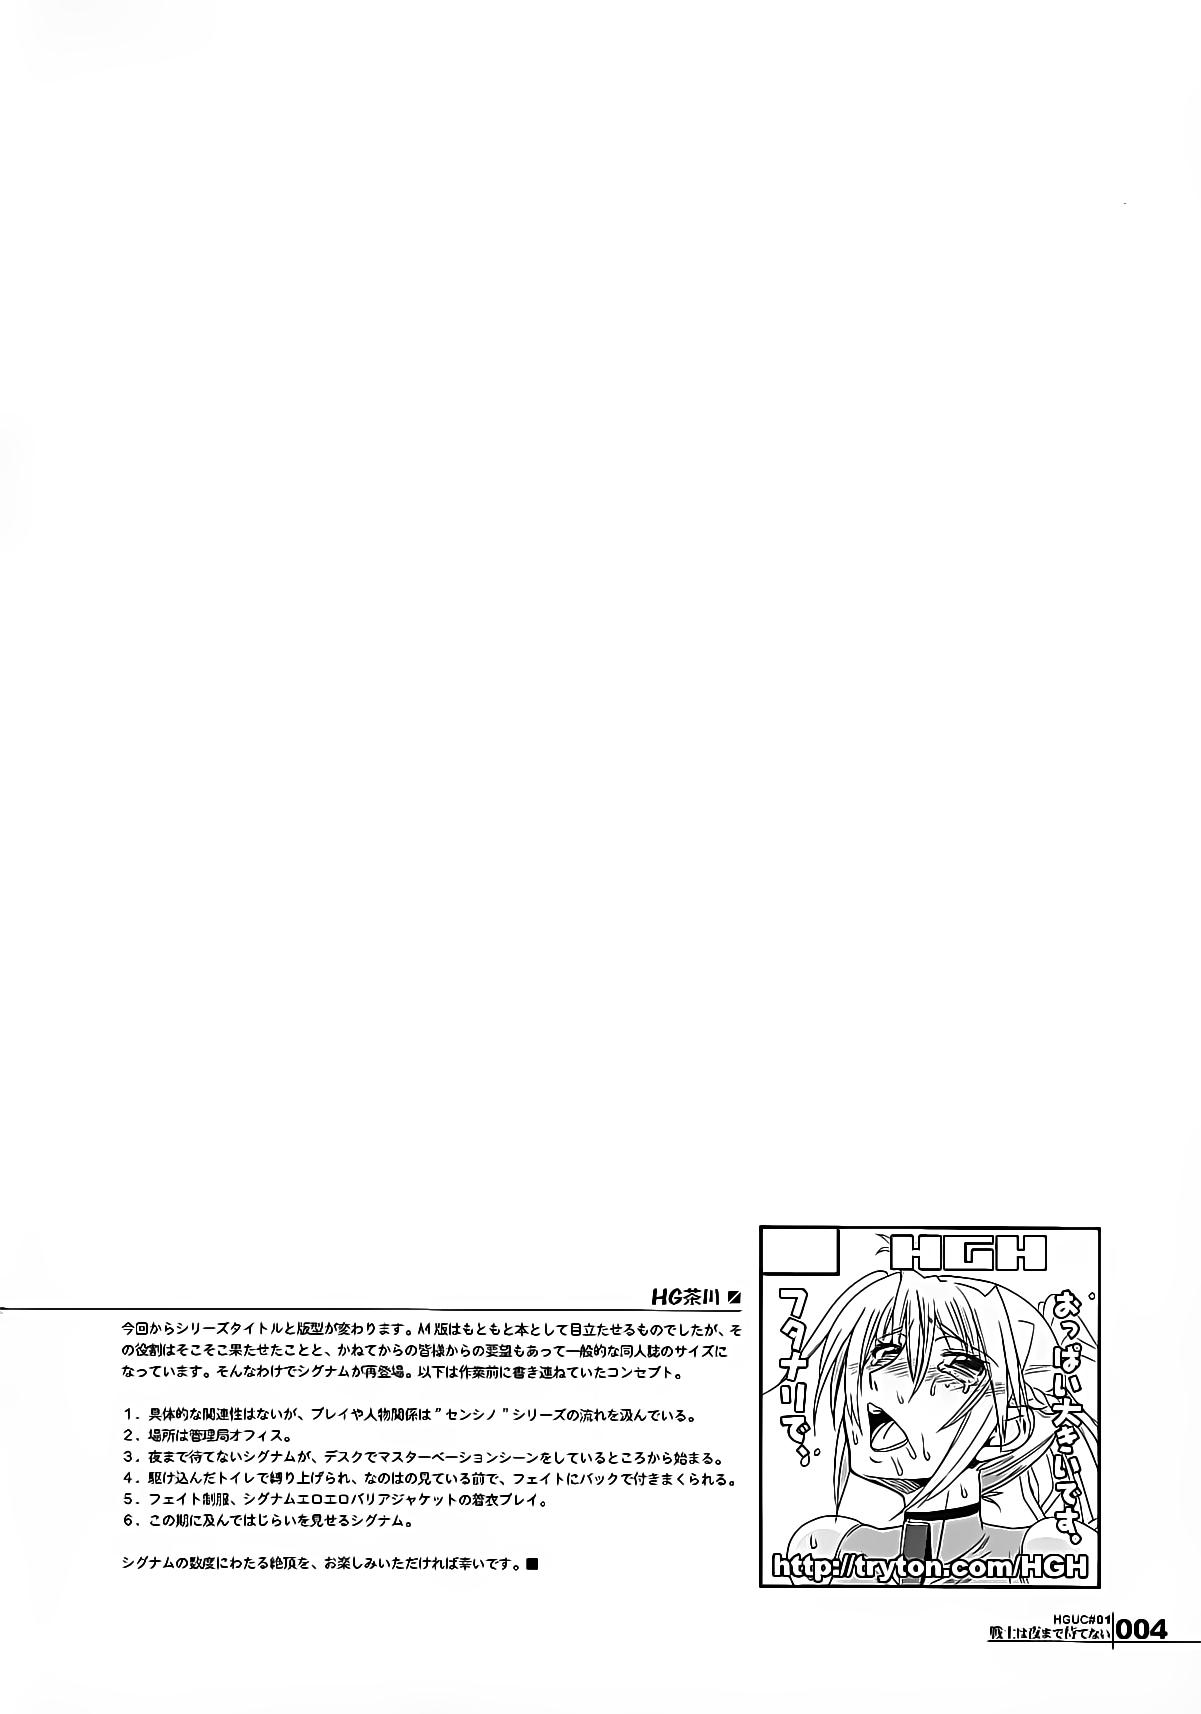 Dildos HGUC#01::Senshi ha Yoru Made Mate Nai - Mahou shoujo lyrical nanoha Free Hardcore Porn - Page 4